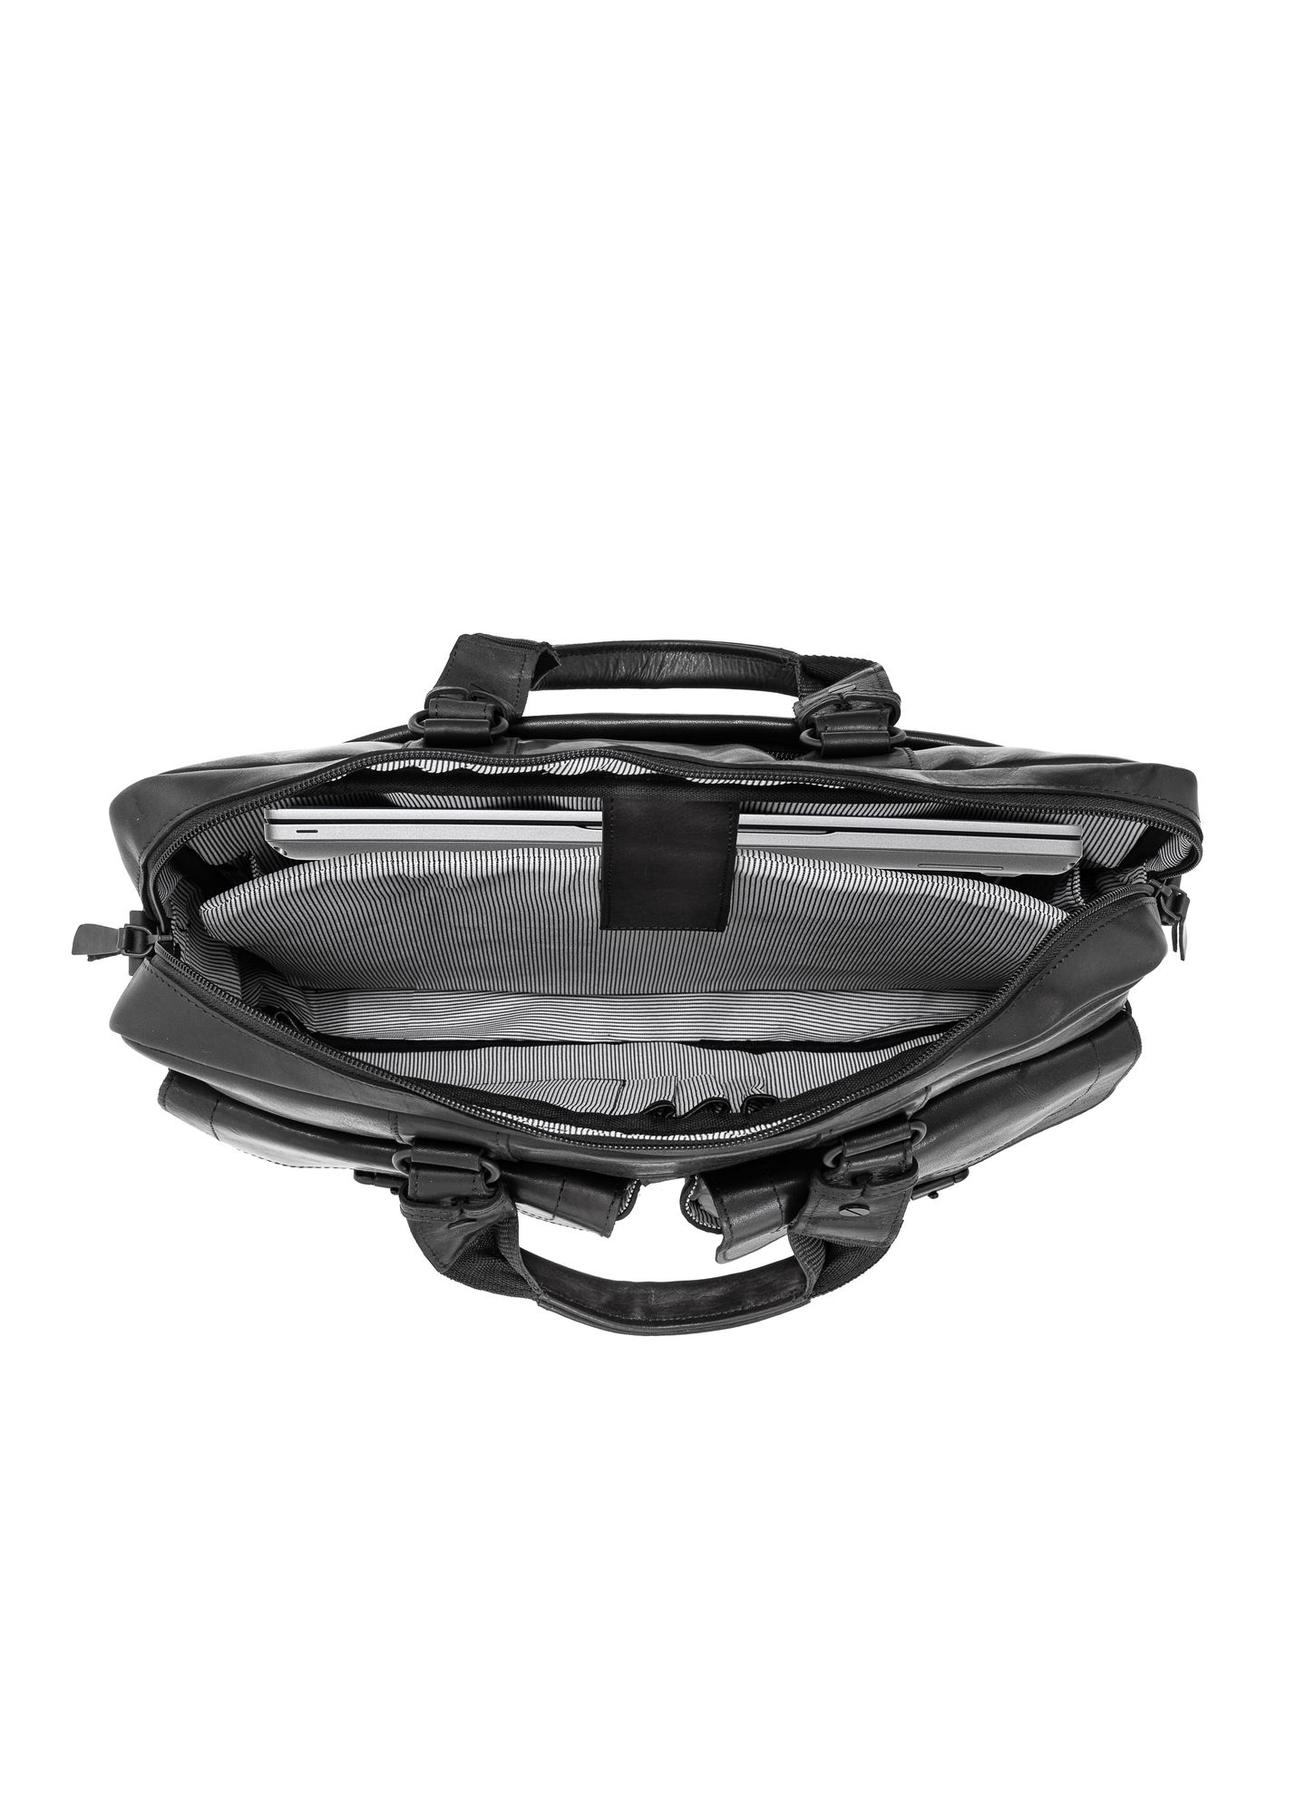 Skórzana torba biznesowa czarna męska TORMS-0404-99(Z23)